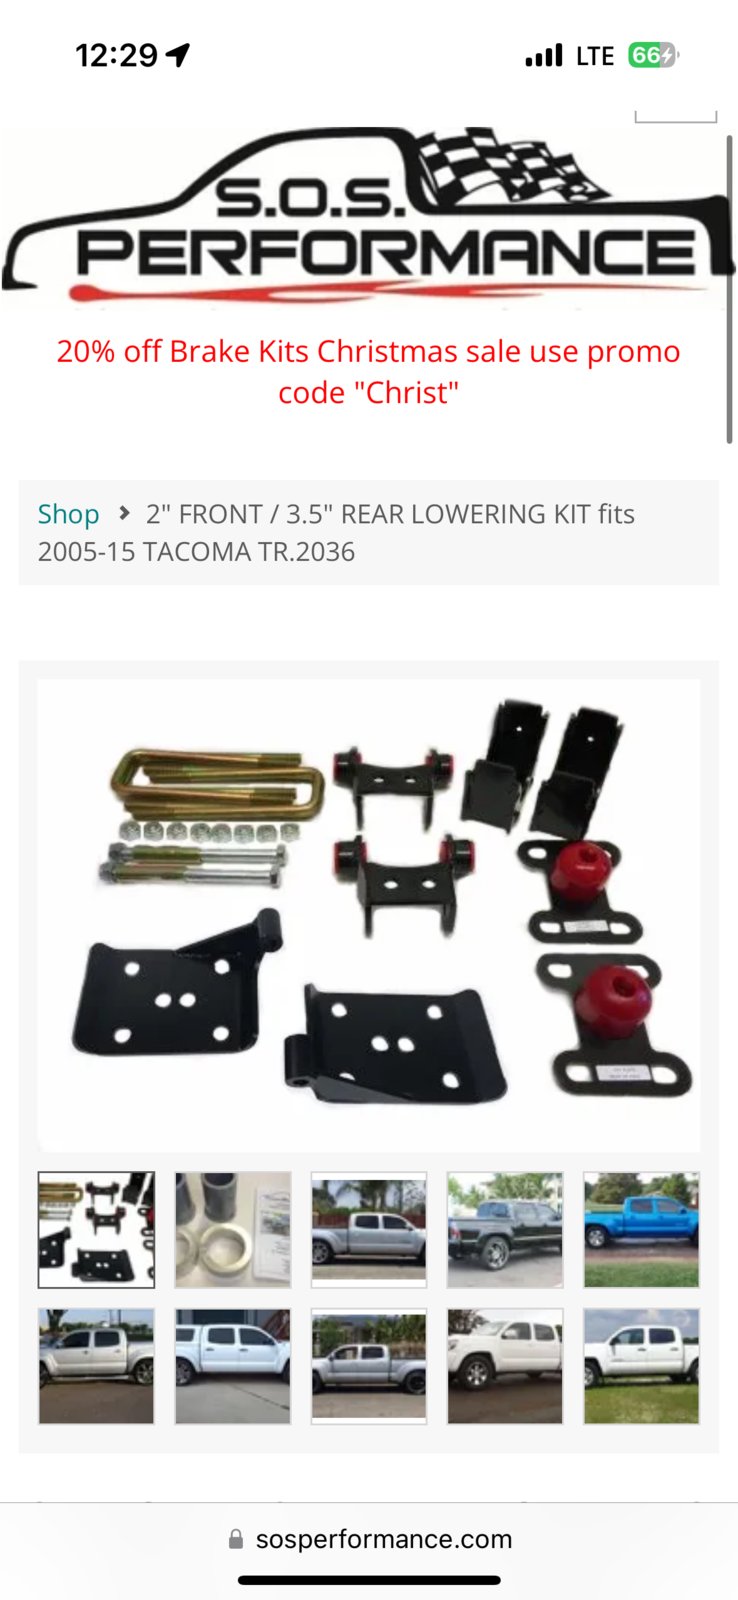  DUXAA Auto Trim Removal Tool Kit,5 Pcs Car Panel